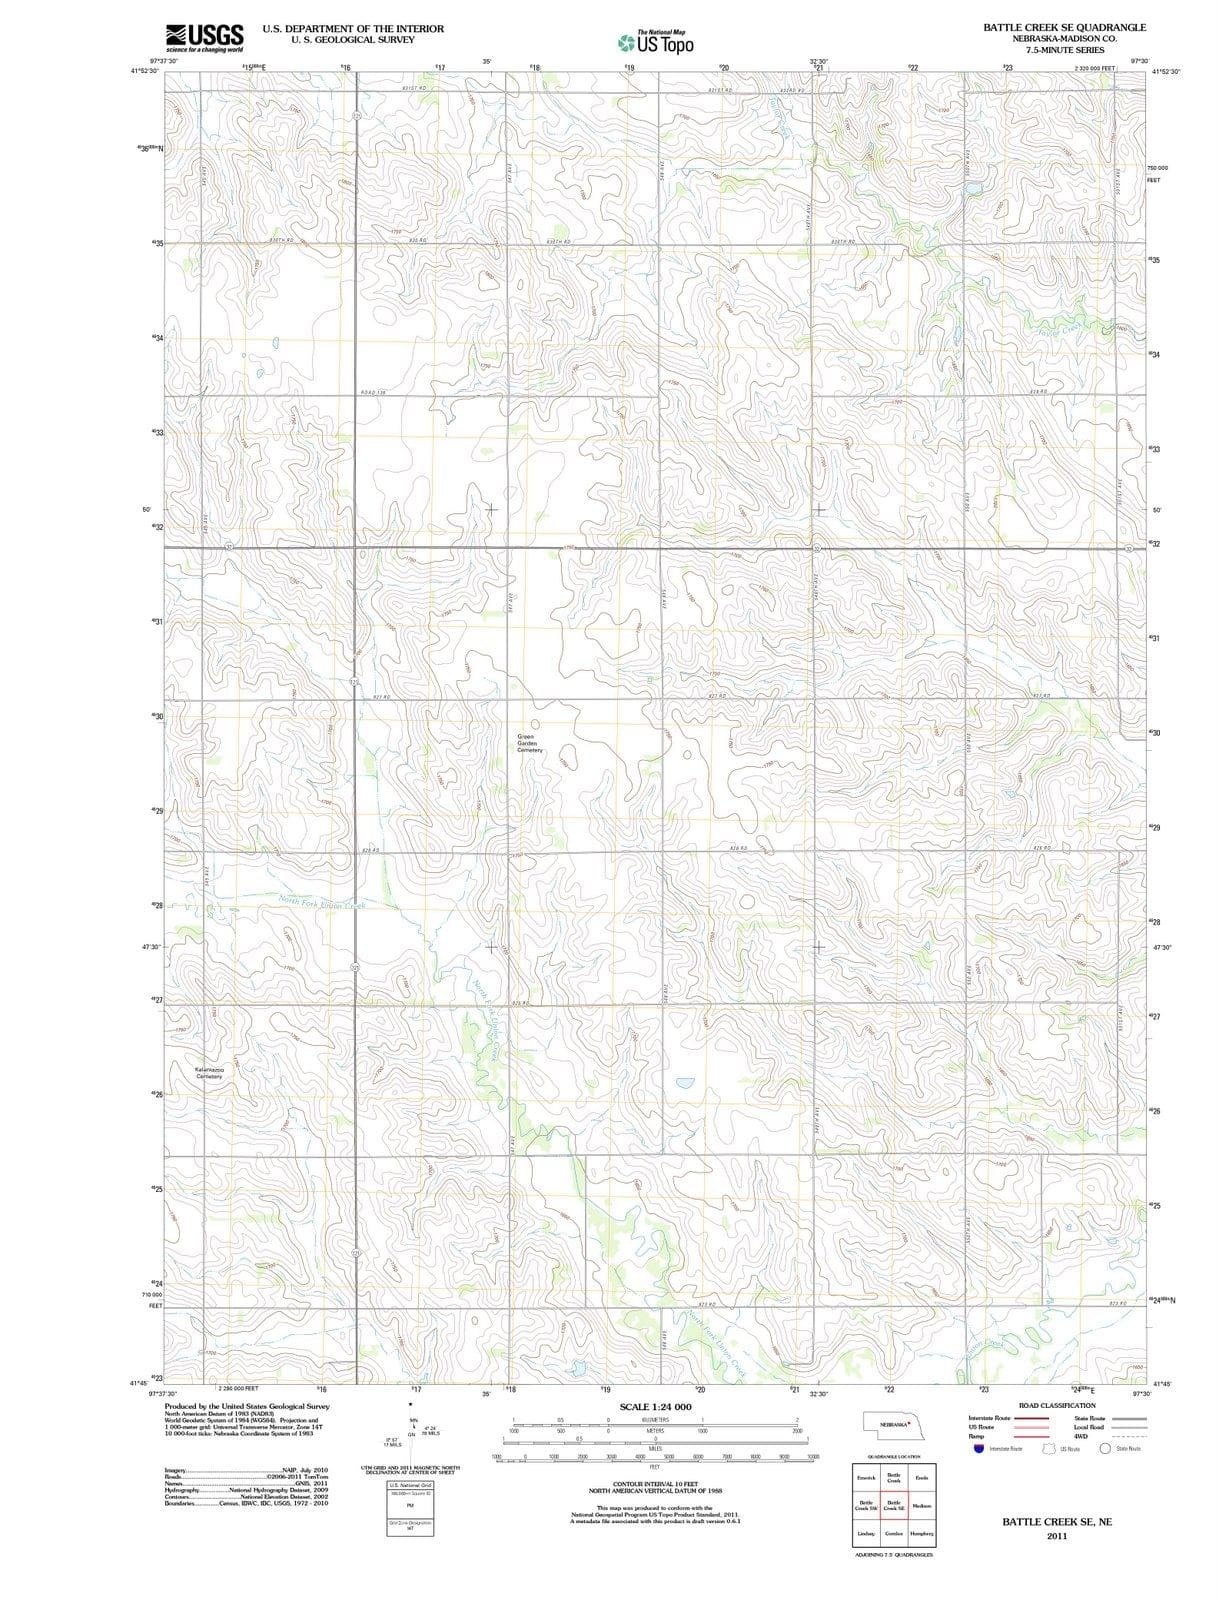 2011 Battle Creek, NE - Nebraska - USGS Topographic Map v2